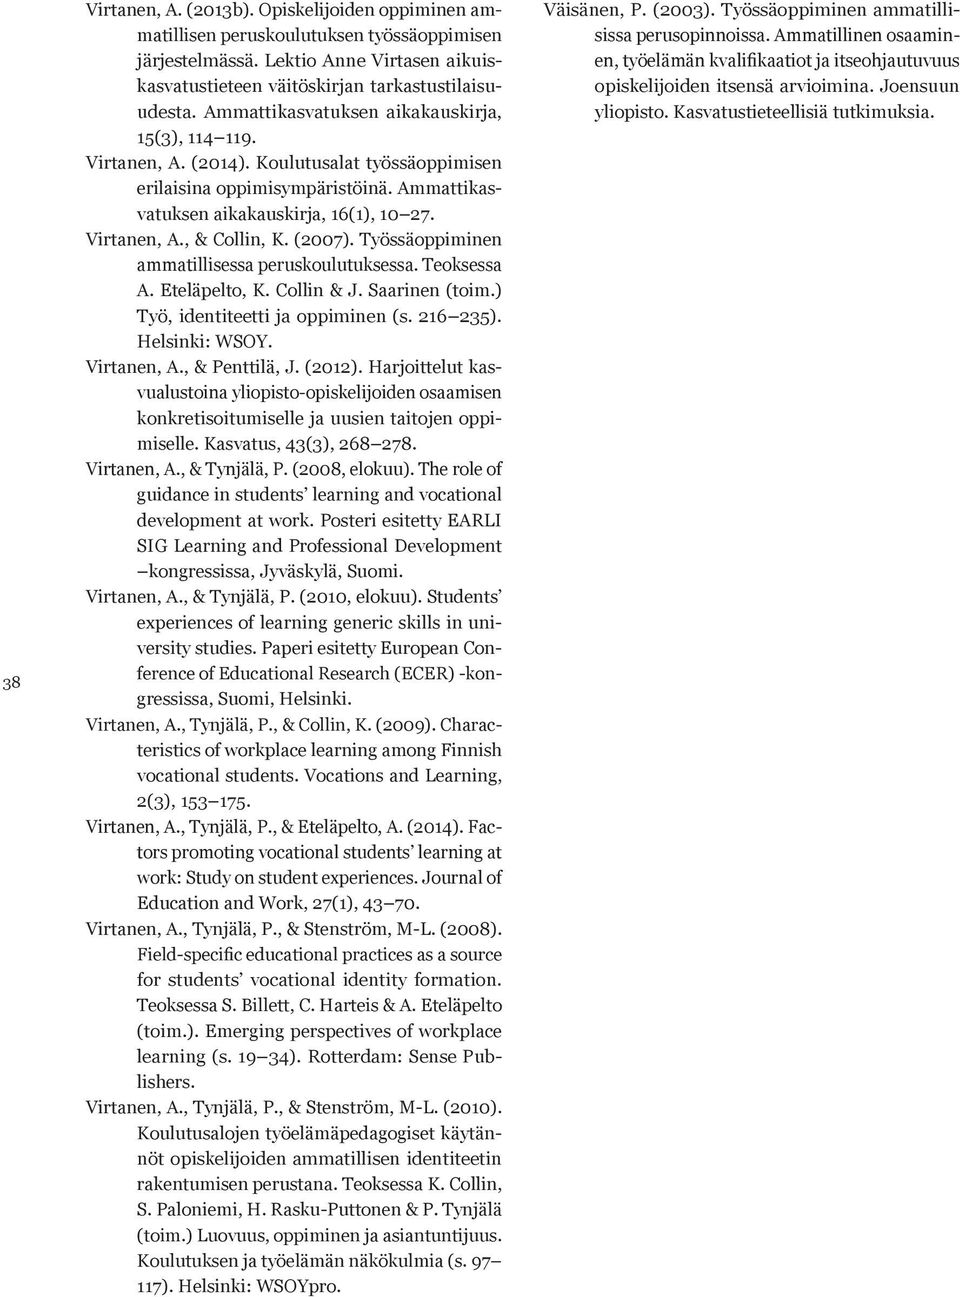 (2007). Työssäoppiminen ammatillisessa peruskoulutuksessa. Teoksessa A. Eteläpelto, K. Collin & J. Saarinen (toim.) Työ, identiteetti ja oppiminen (s. 216 235). Helsinki: WSOY. Virtanen, A.